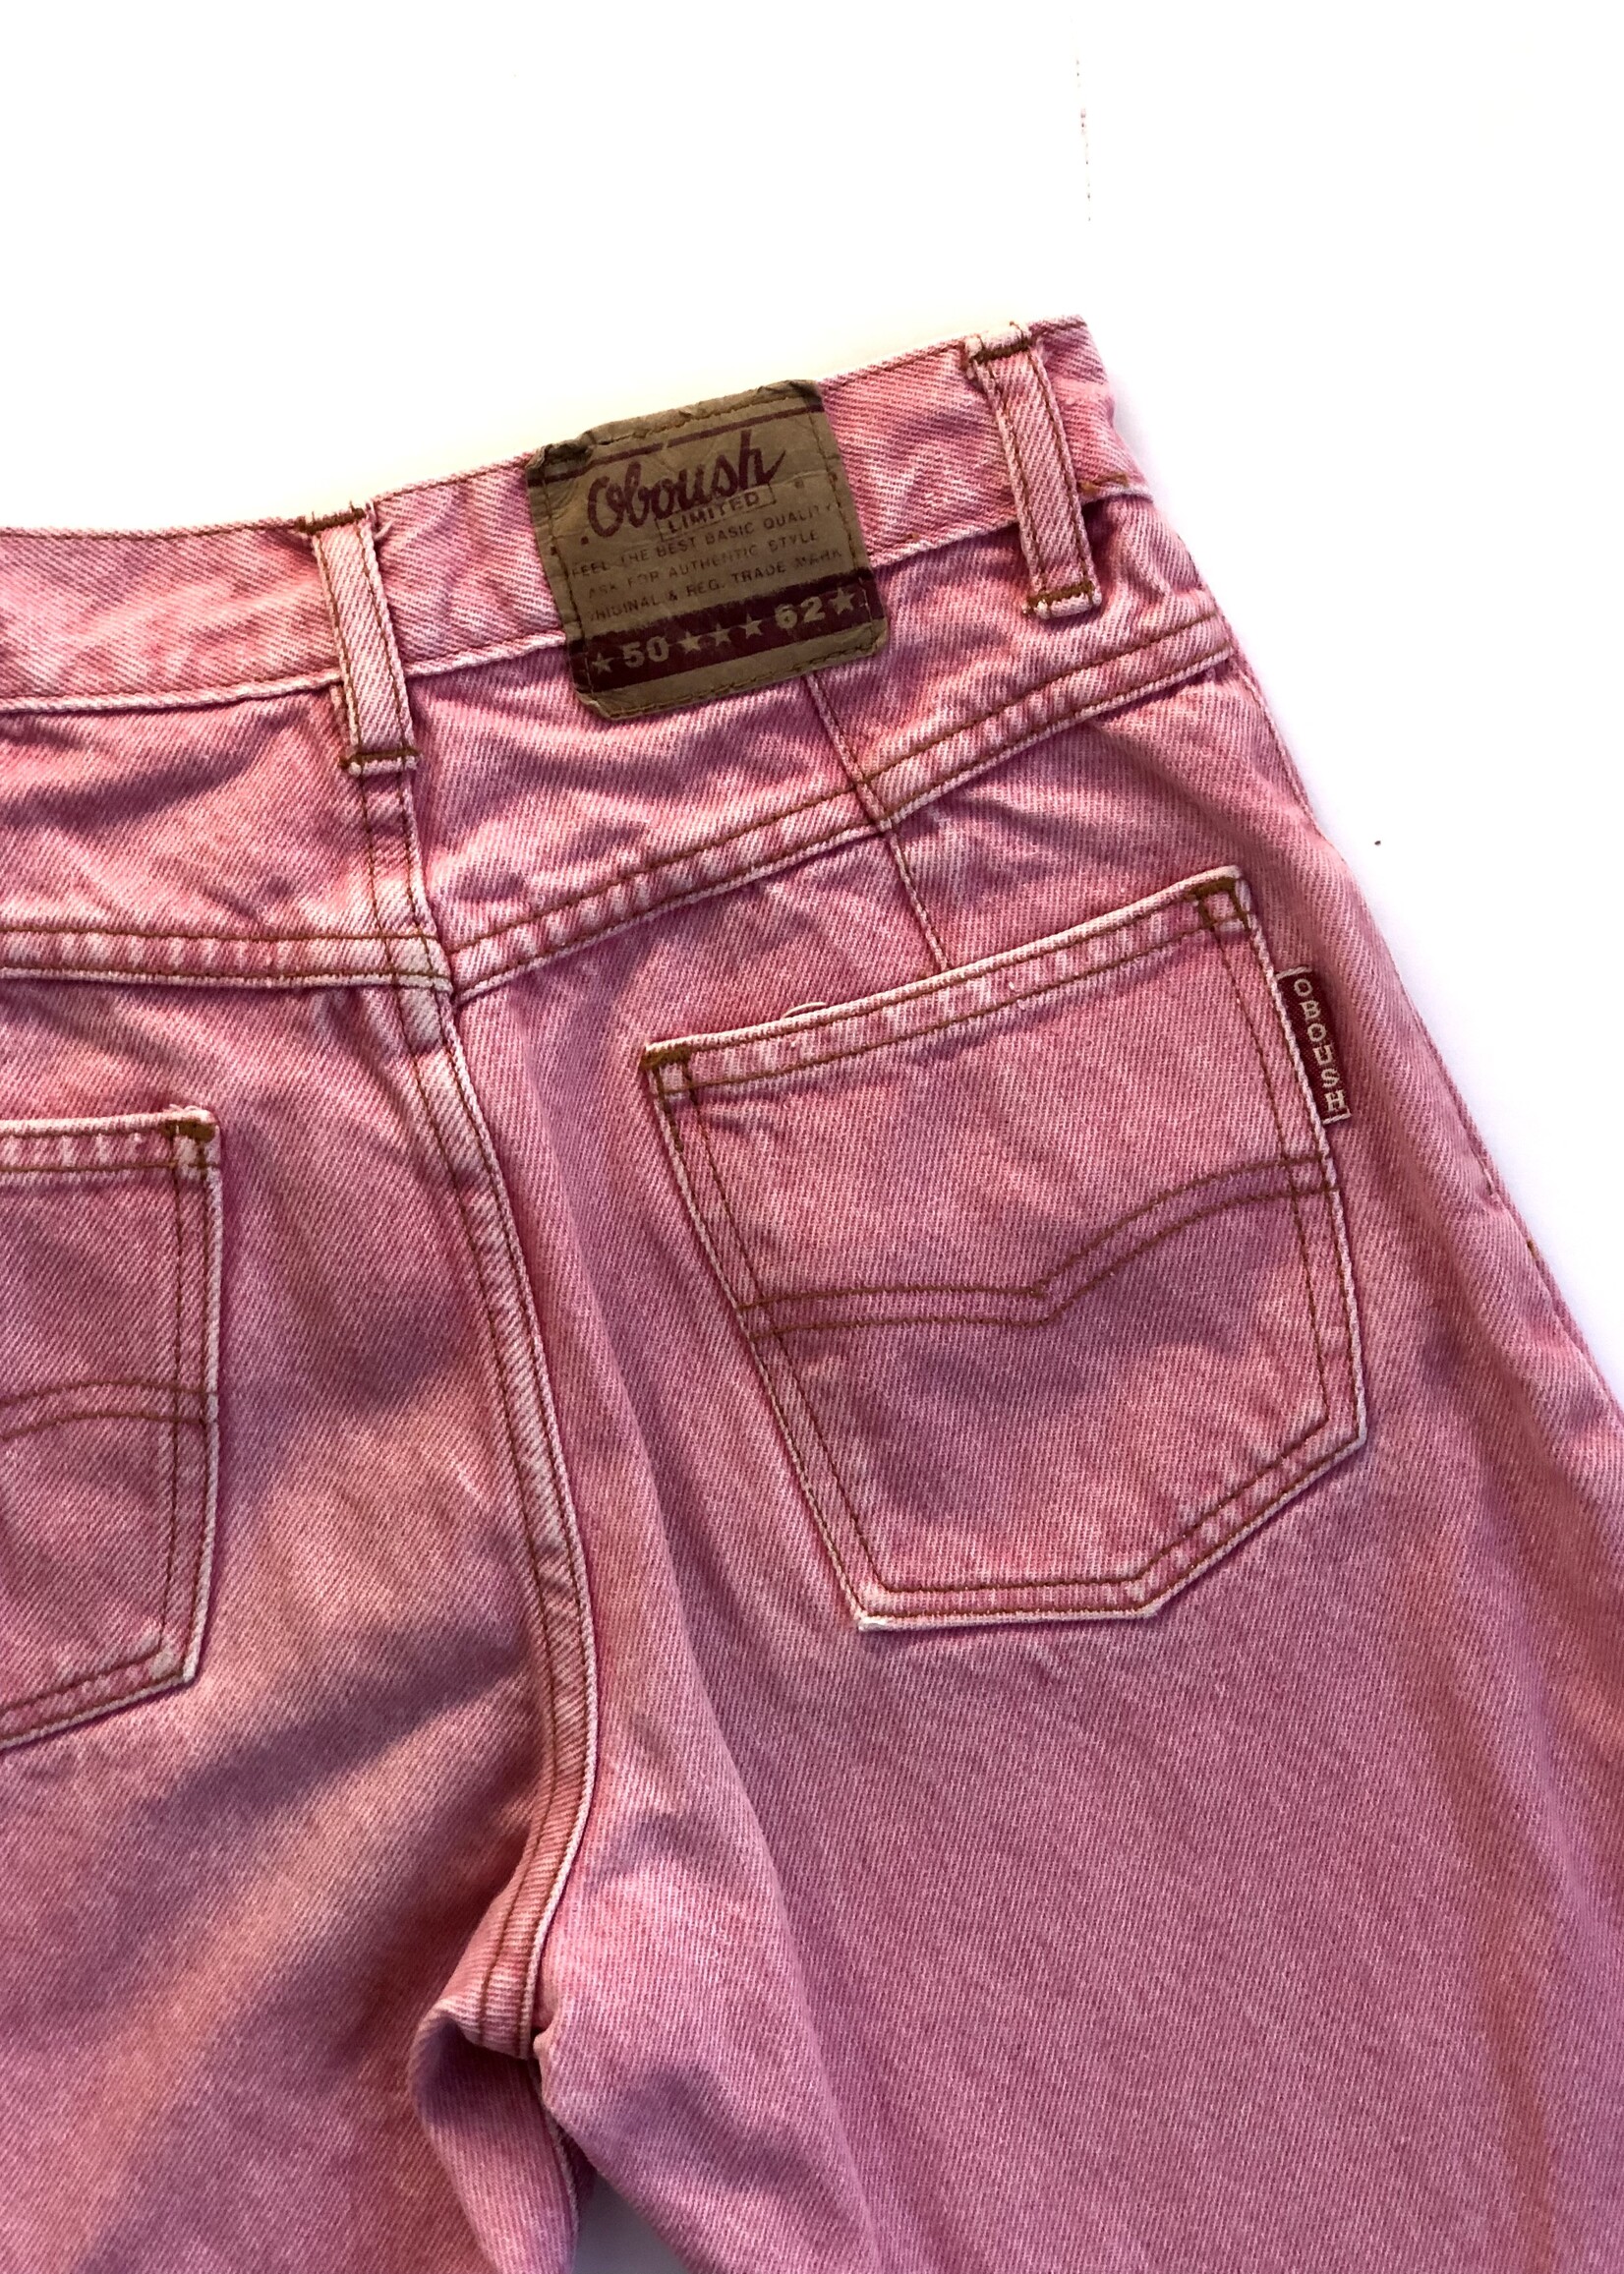 Vintage The Pink Jeans 8y